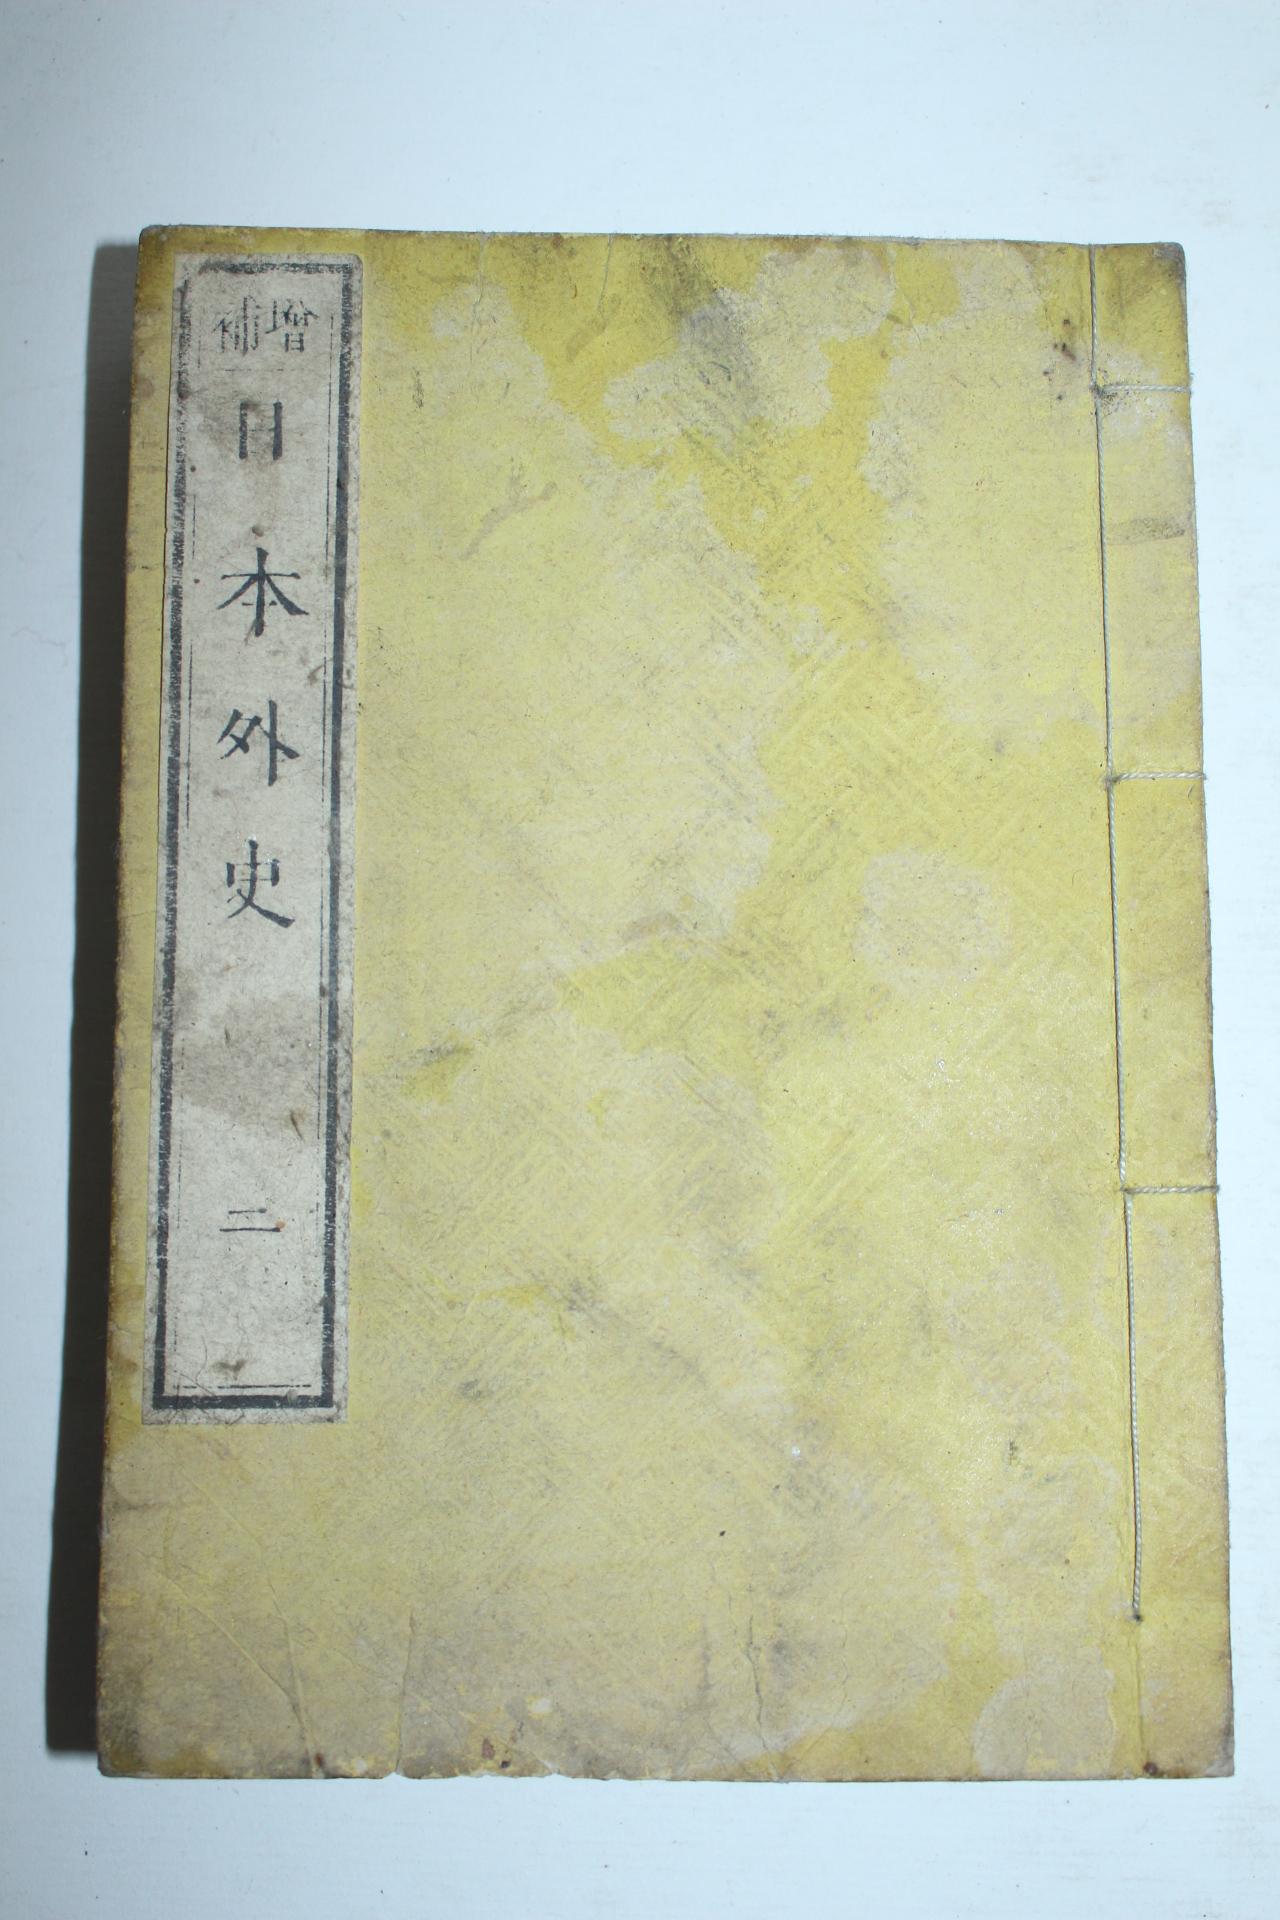 1800년대 일본목판본 일본외사(日本外史)권2  1책